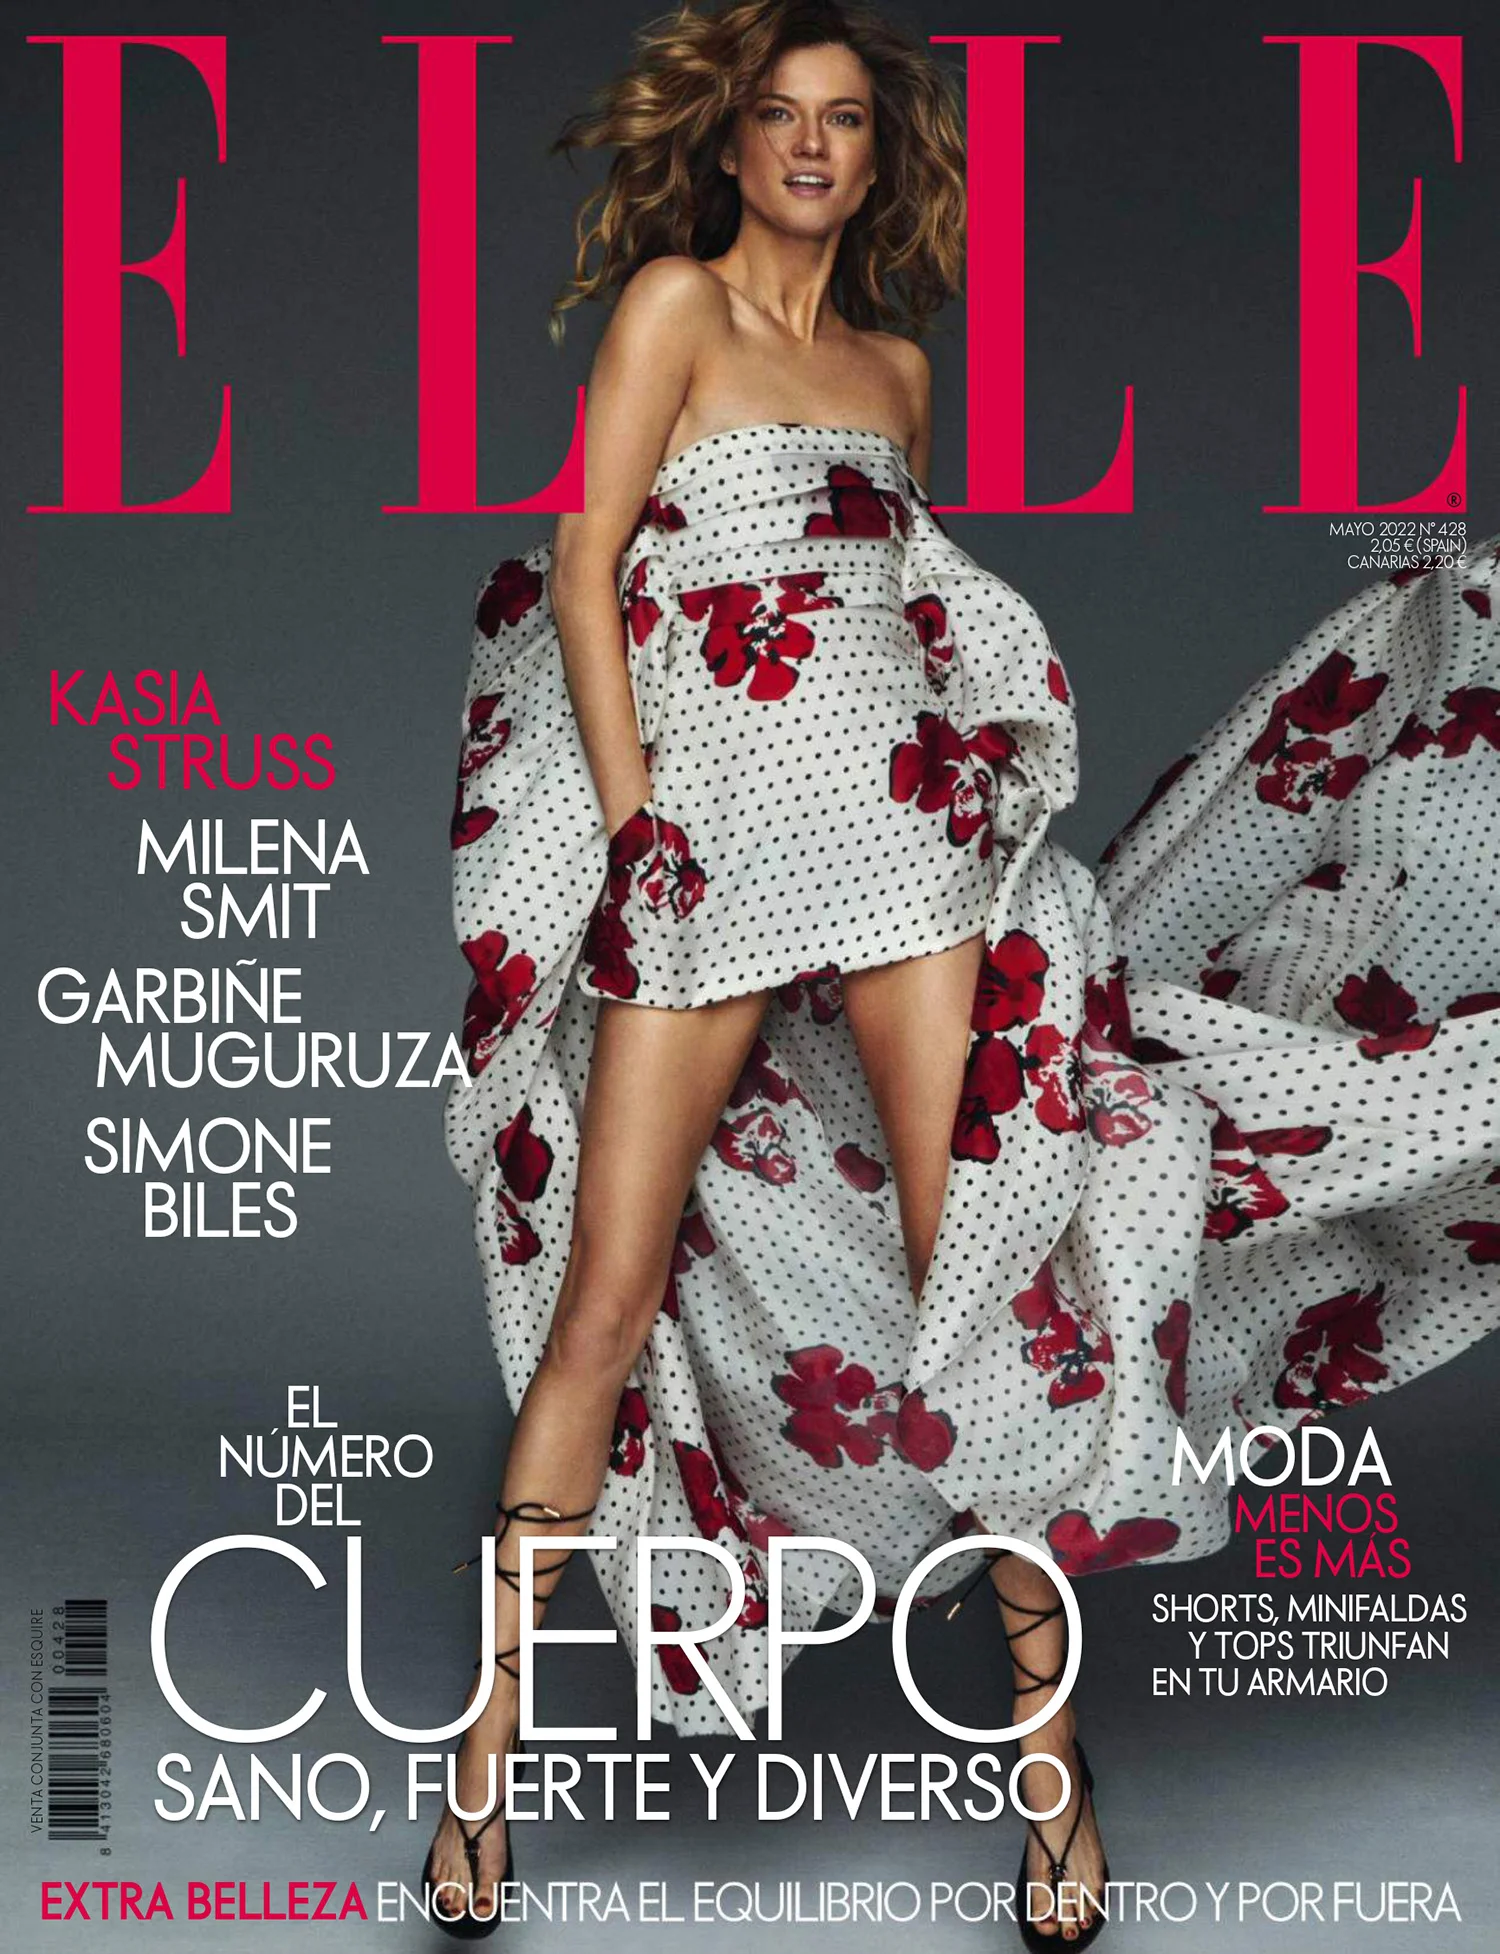 Kasia Struss covers Elle Spain May 2022 by Mario Sierra